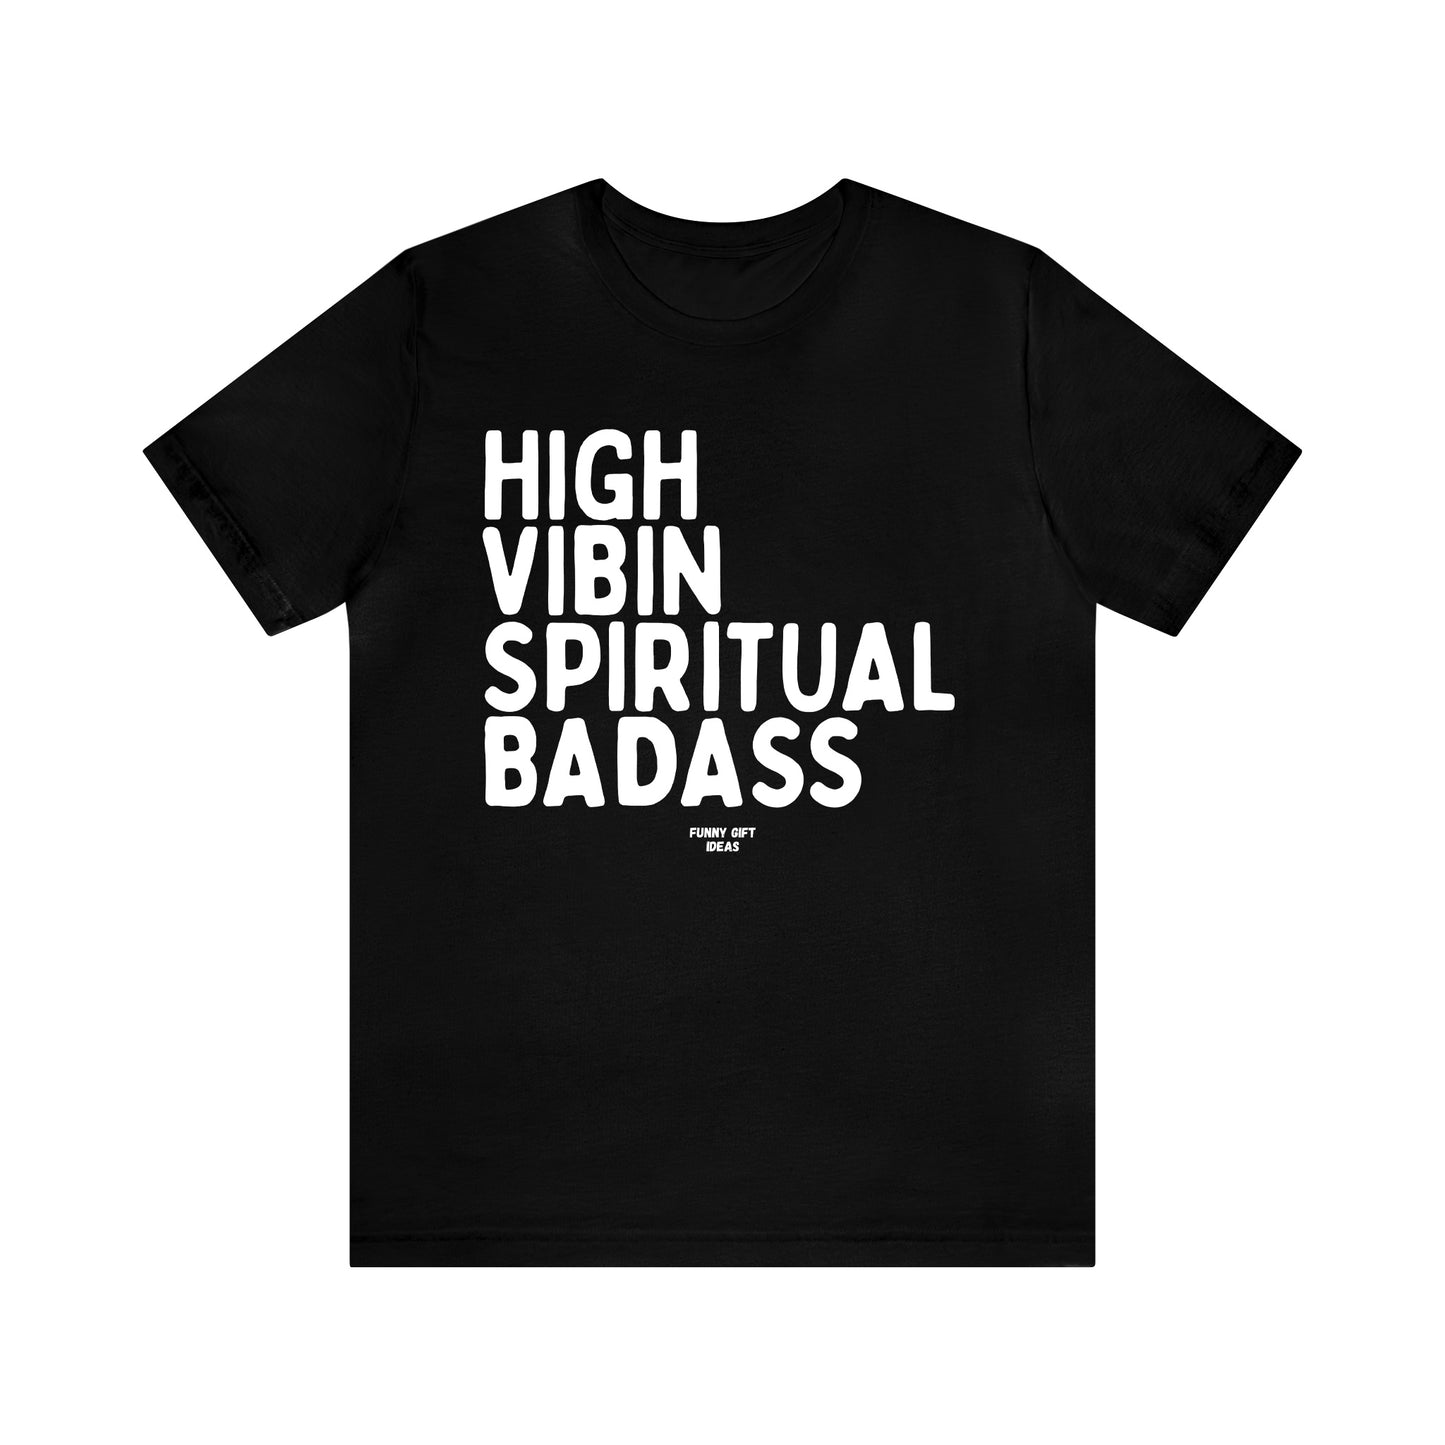 Funny Shirts for Women - High Vibin Spiritual Badass - Women's T Shirts